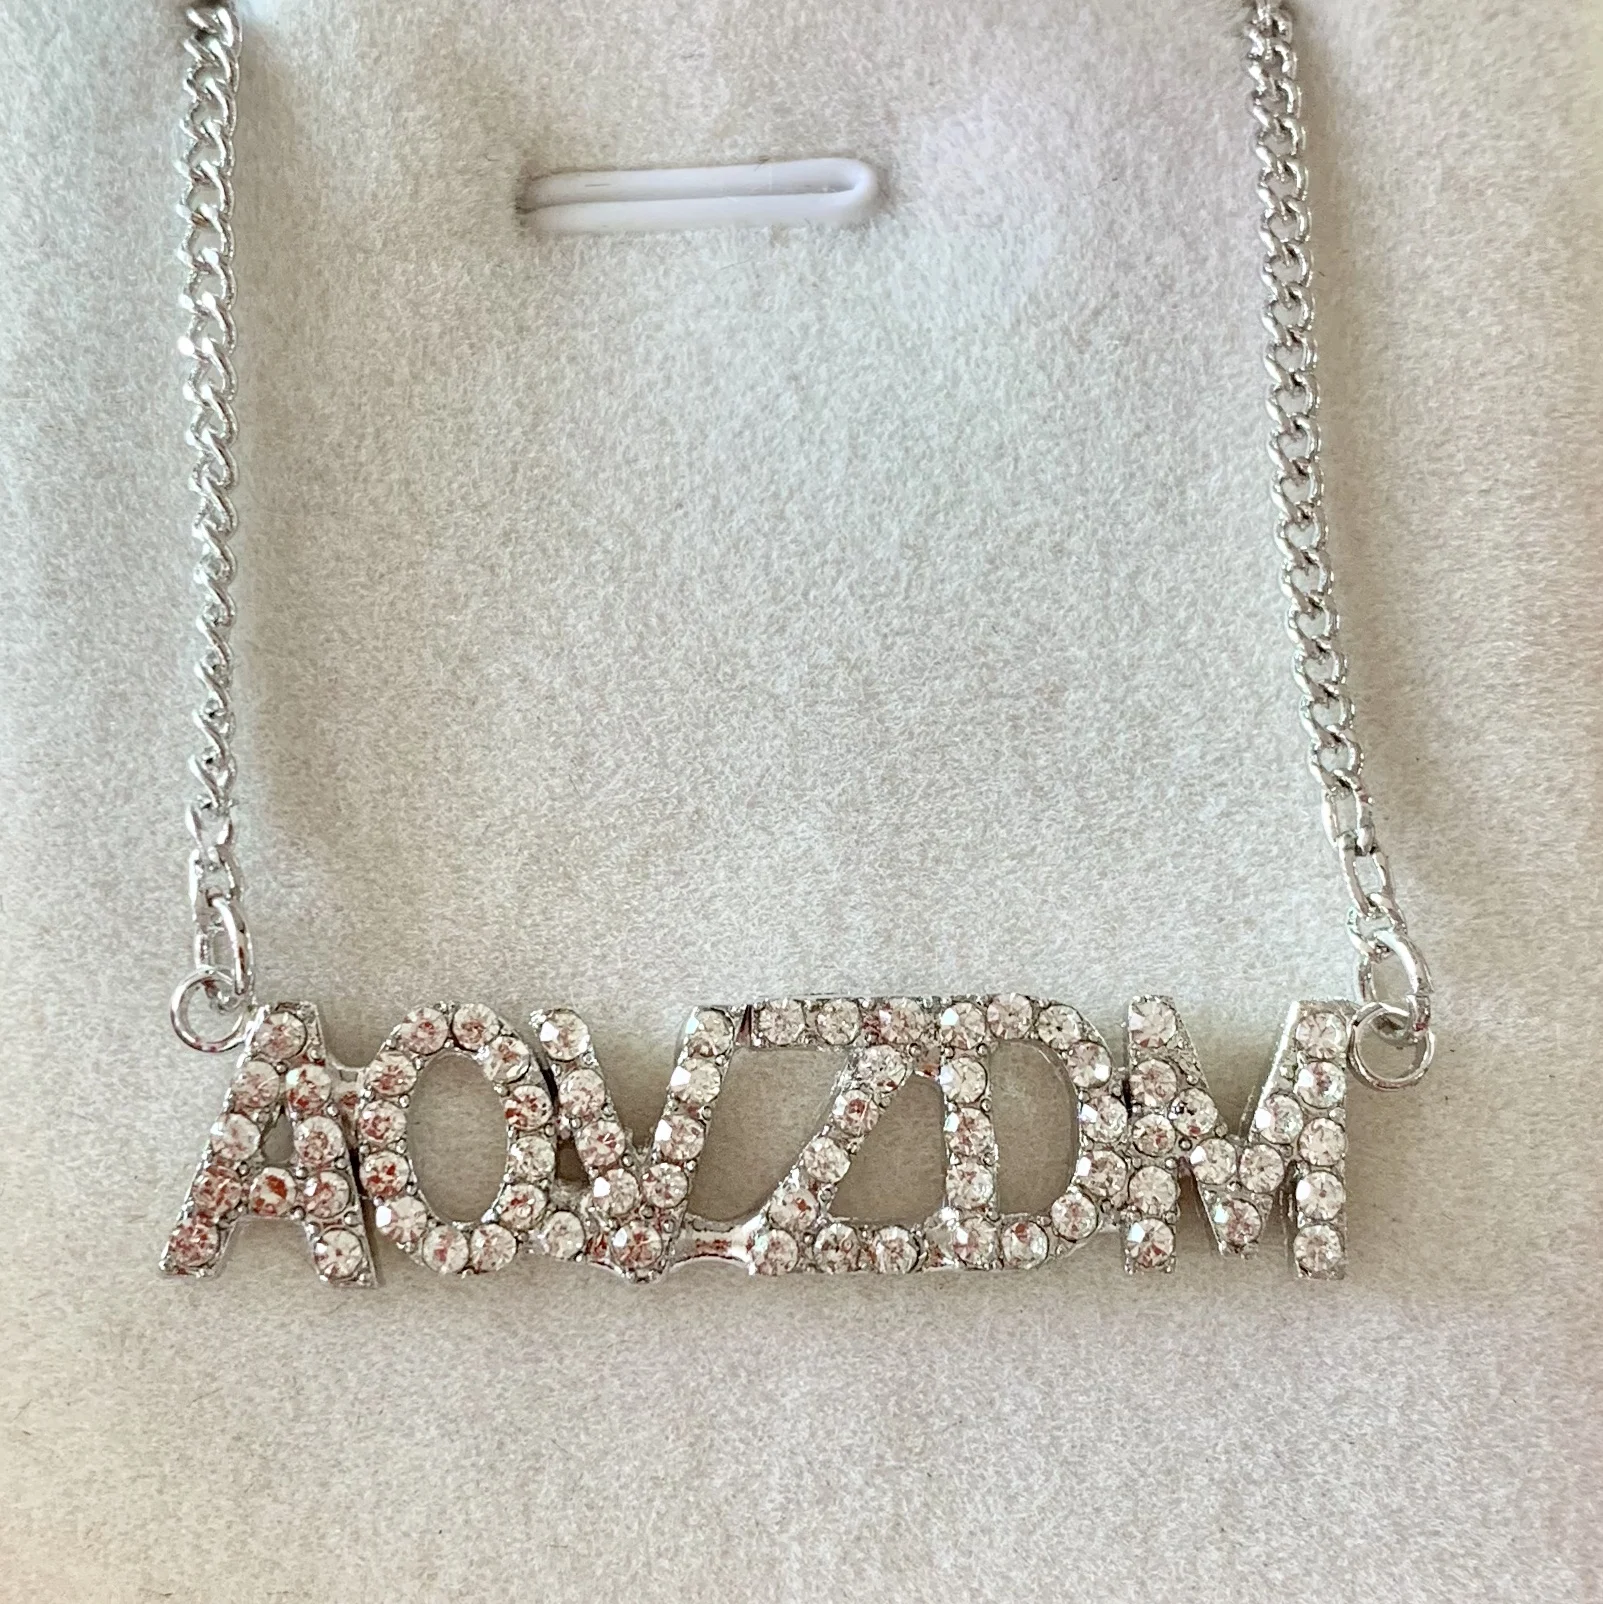 FYN6688 хрустальные люстры Цепочки и ожерелья пользовательское имя ожерелье с буквенными подвесками Медь Для женщин персонализированное ожерелье C именем индивидуальный подарок